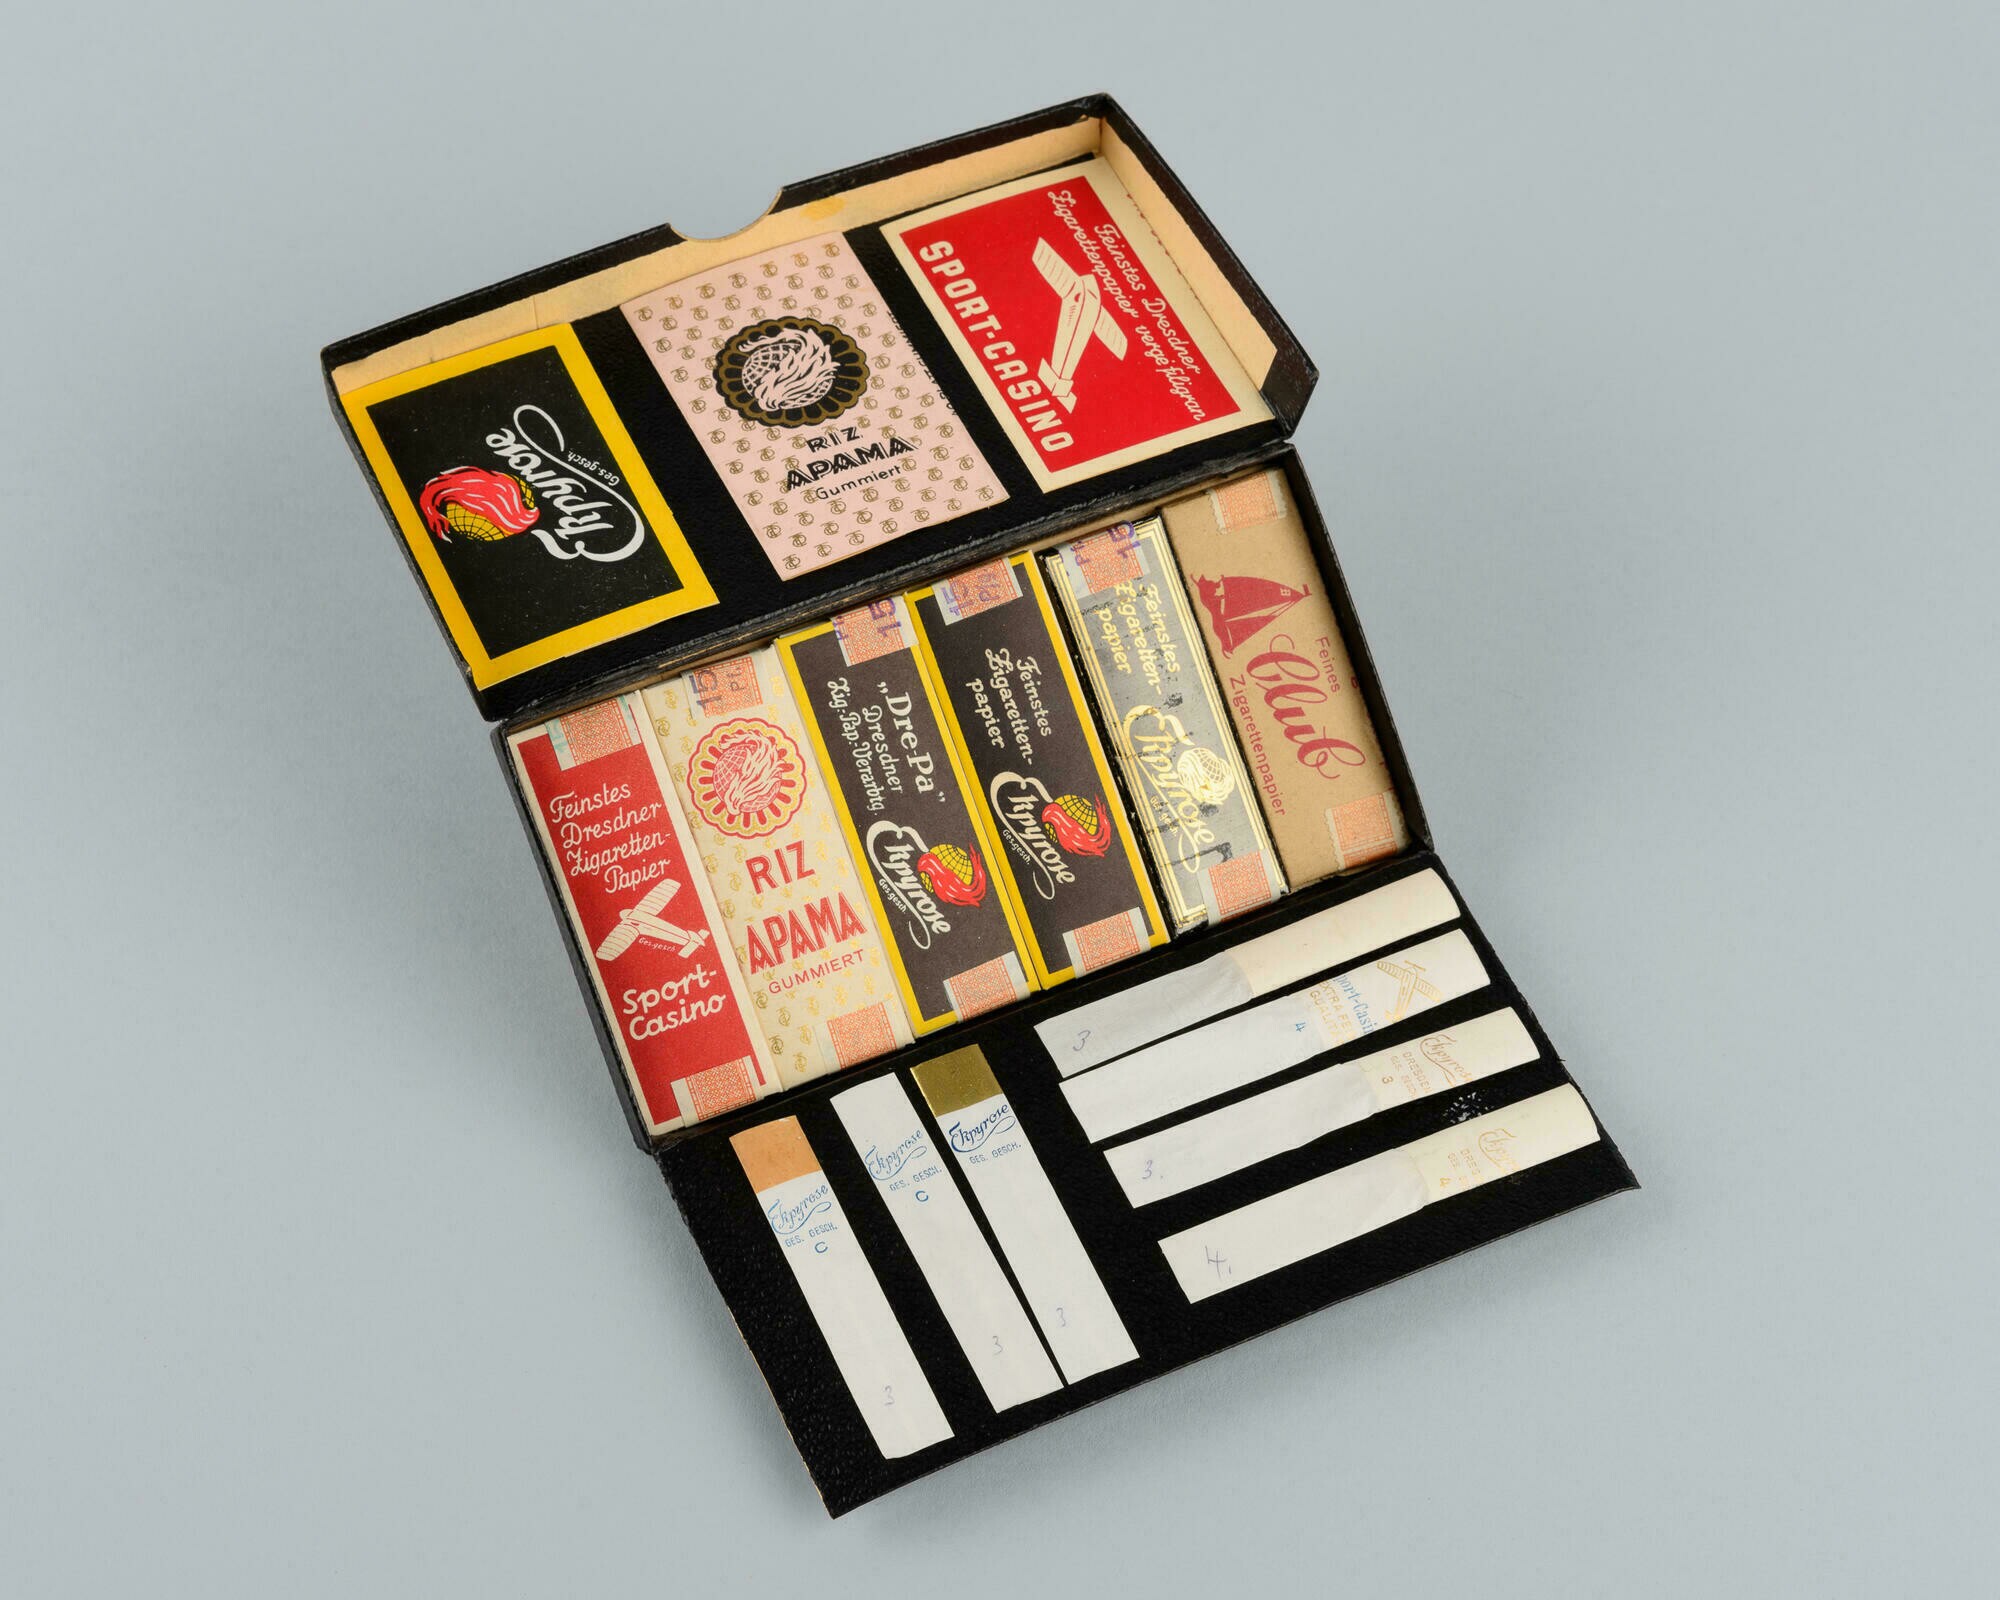 Musterpackung für Zigarettenpapiere der Marken "Ekpyrose, RIZ APAMA, SPORT-CASINO" (Stadtmuseum Dresden CC BY-NC-ND)